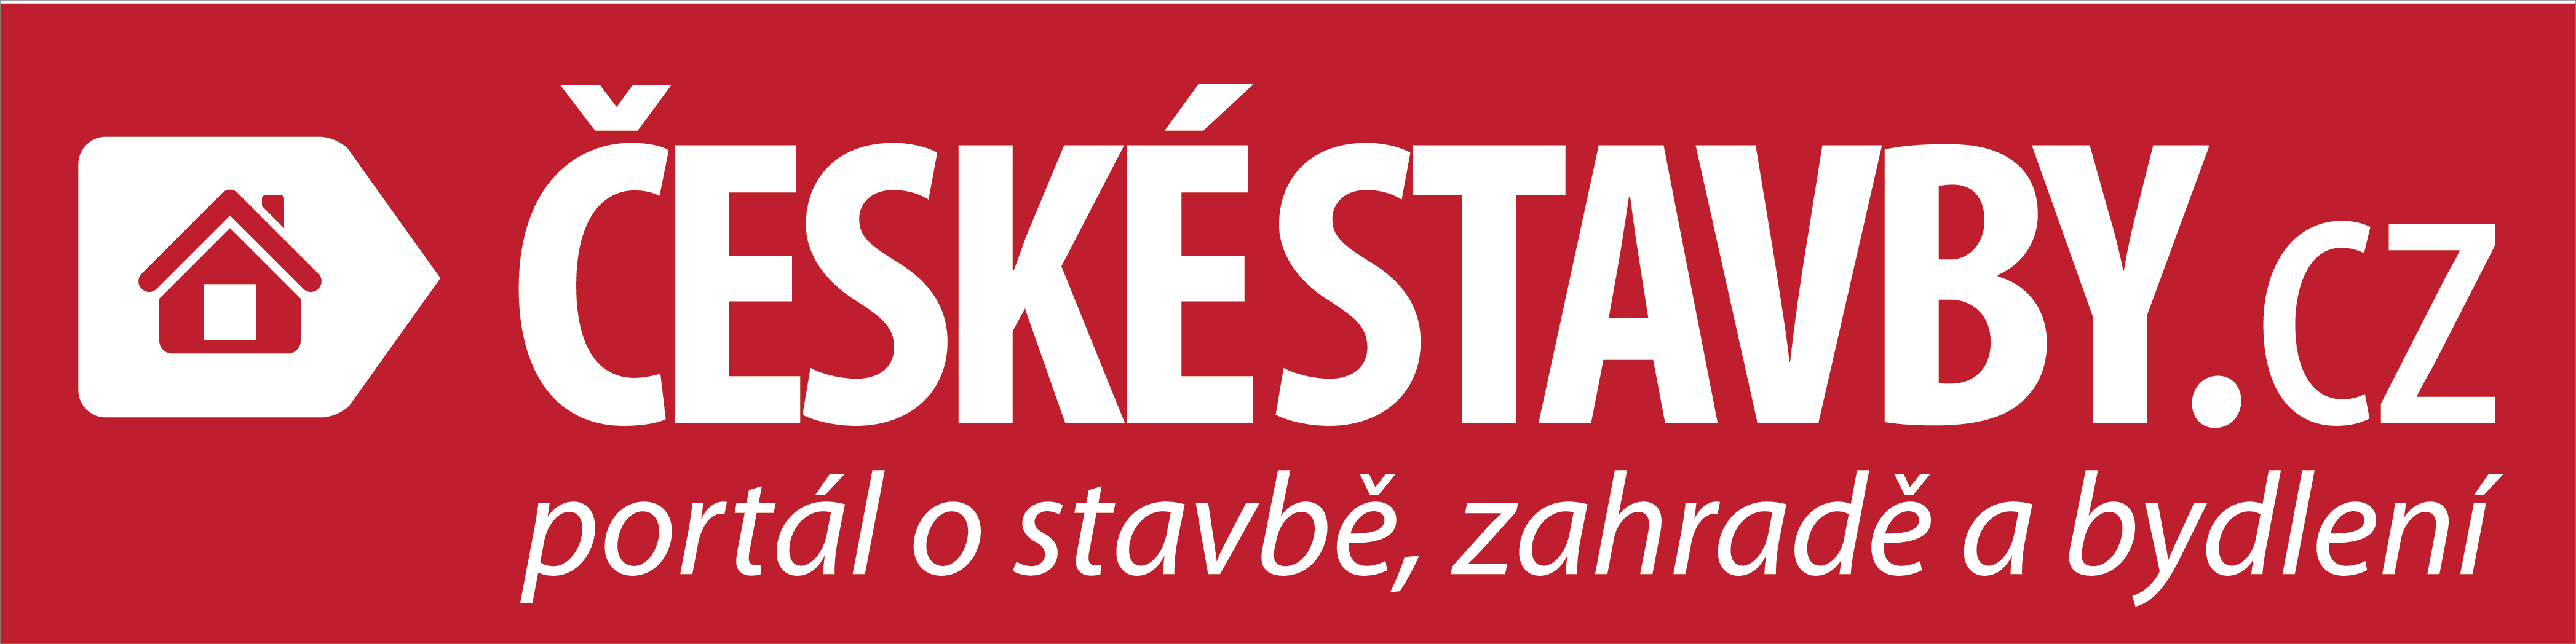 ceskestavby.cz